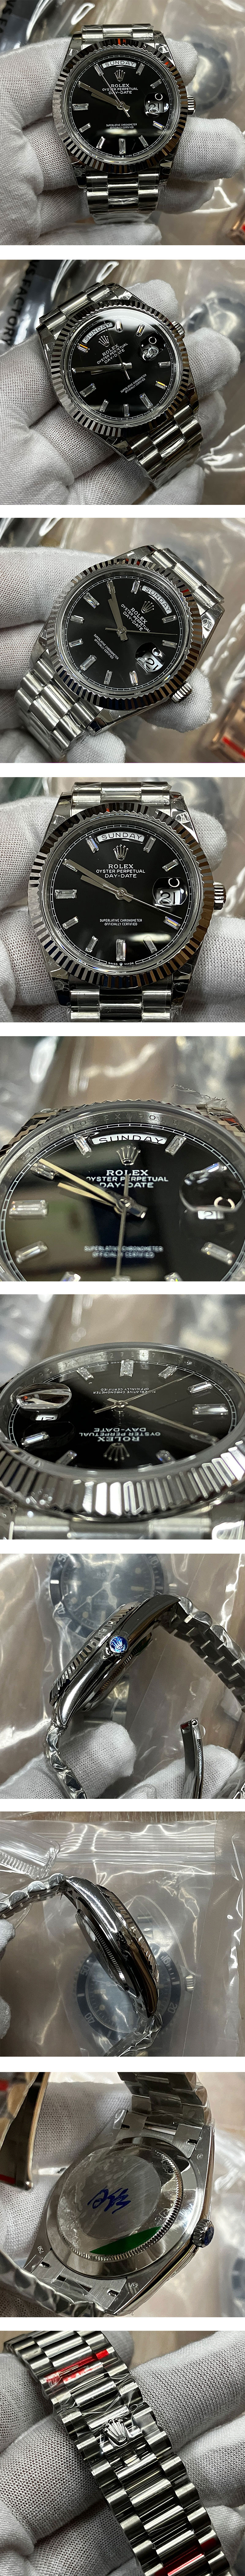 ロレックスN級品スーパーコピー時計 デイデイトM228239-0005 ブラック 40mm